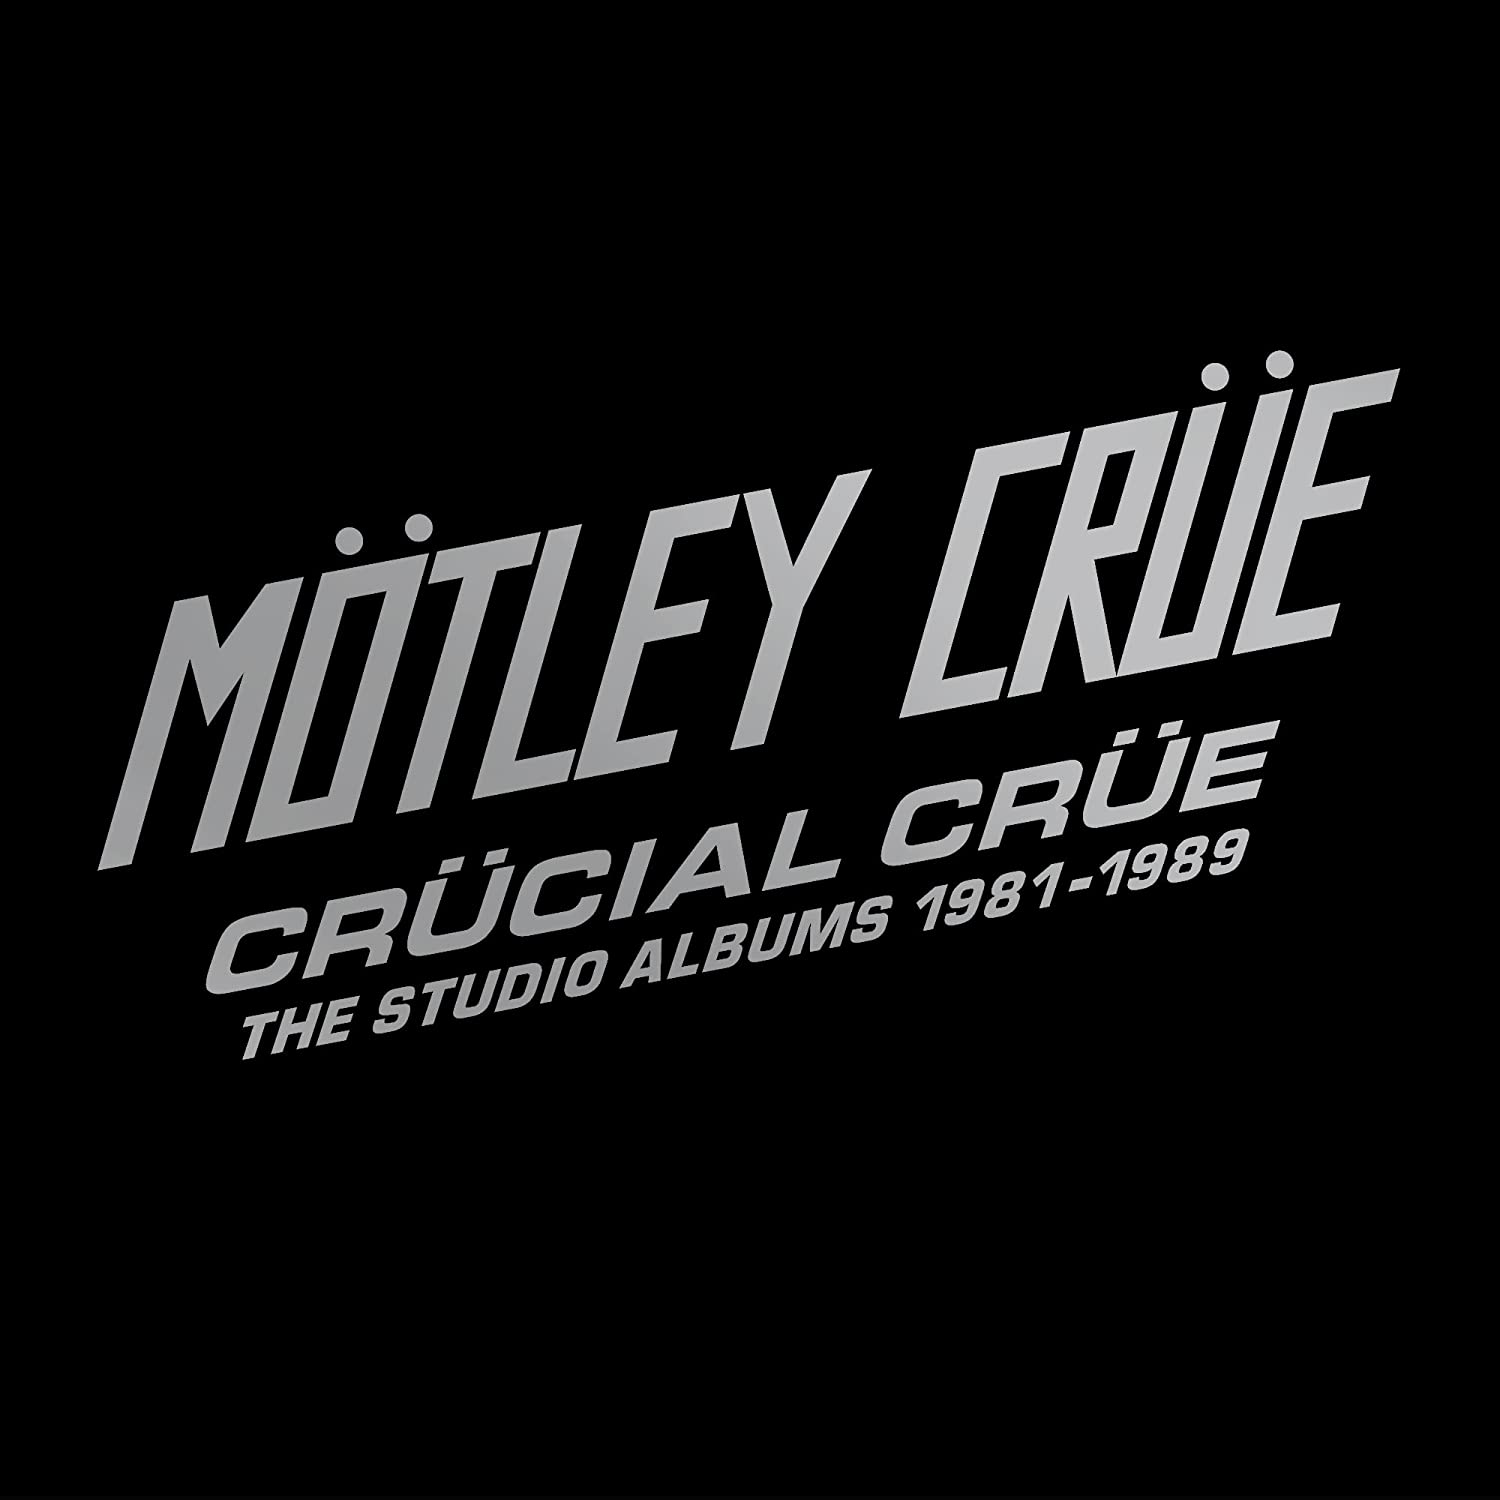 Motley Crue / Crucial Crue: The Studio Albums 1981-1989